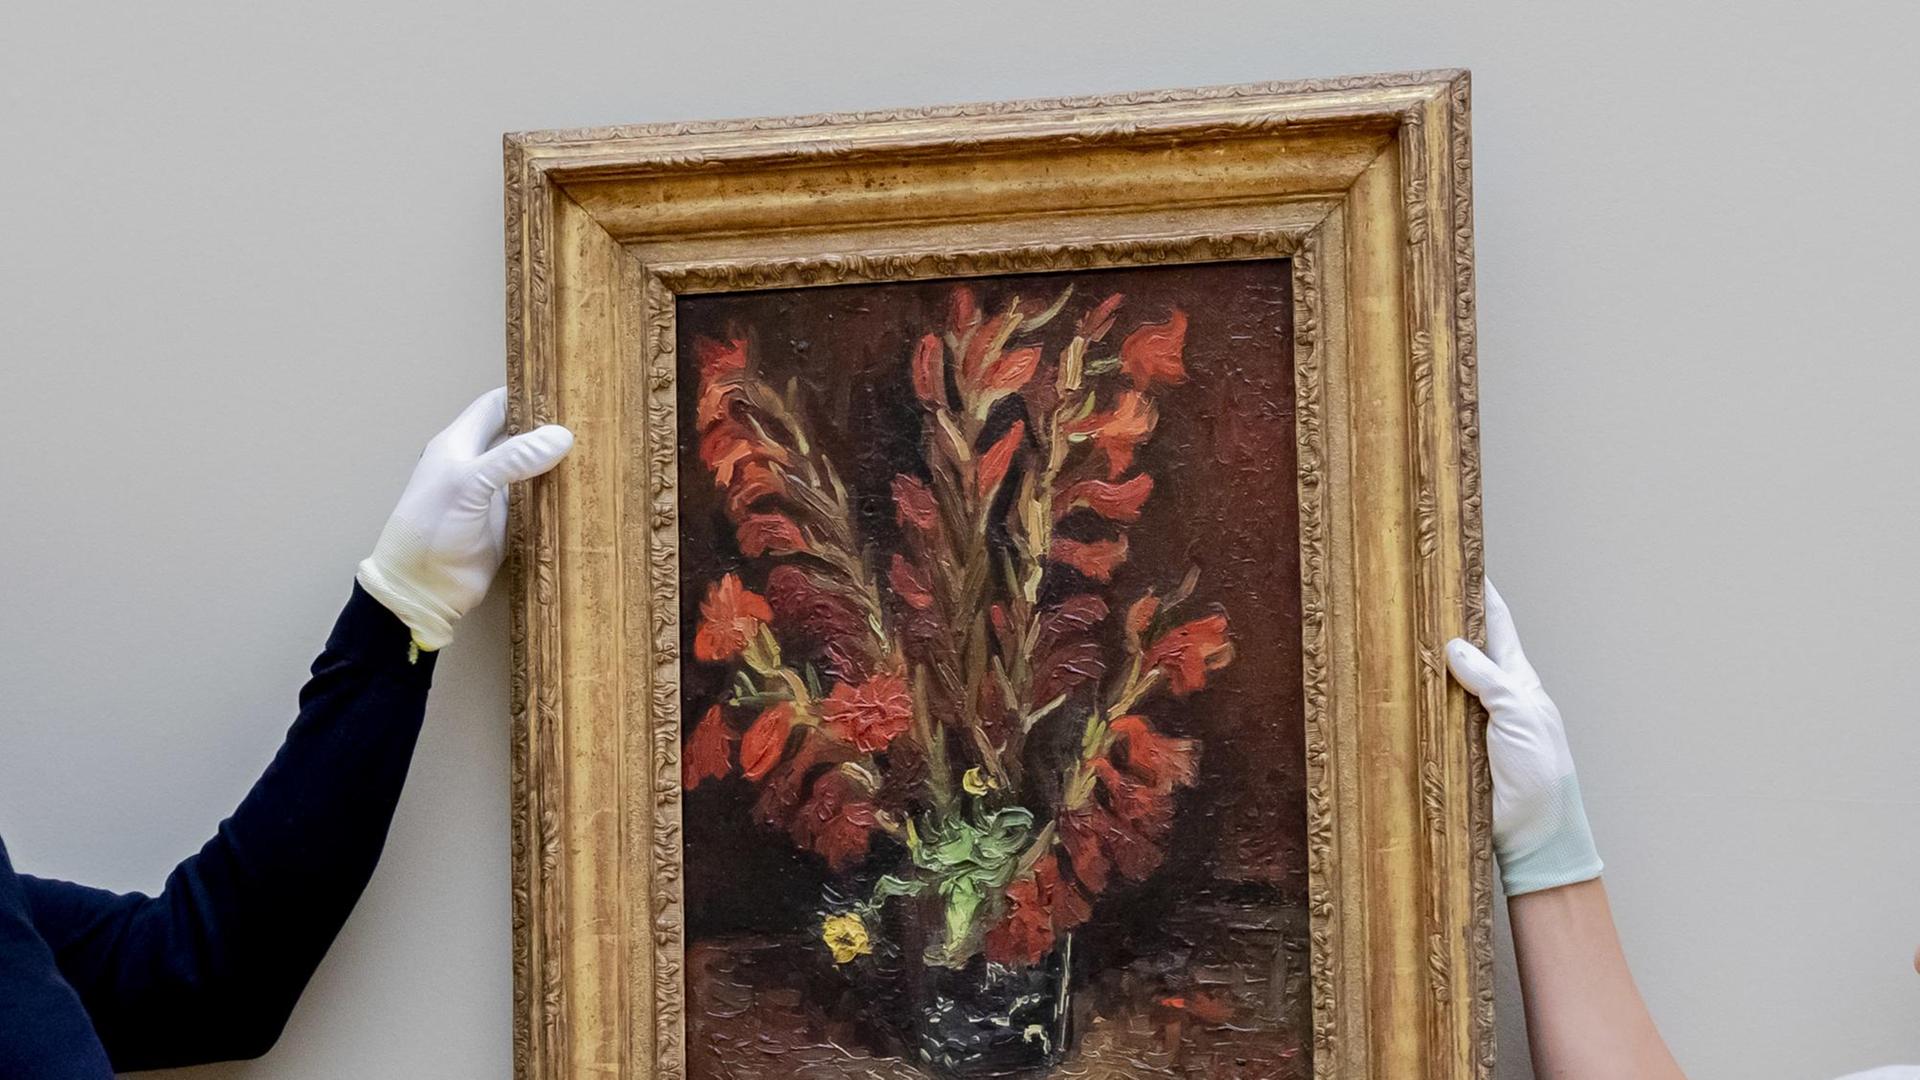 Zwei Mitarbeiter des Aufbauteams hängen beim Aufbau der Ausstellung „Van Gogh. Stillleben" im Museum Barberini das Werk „Vase mit roten Gladiolen, 1886" des Malers Vincent van Gogh